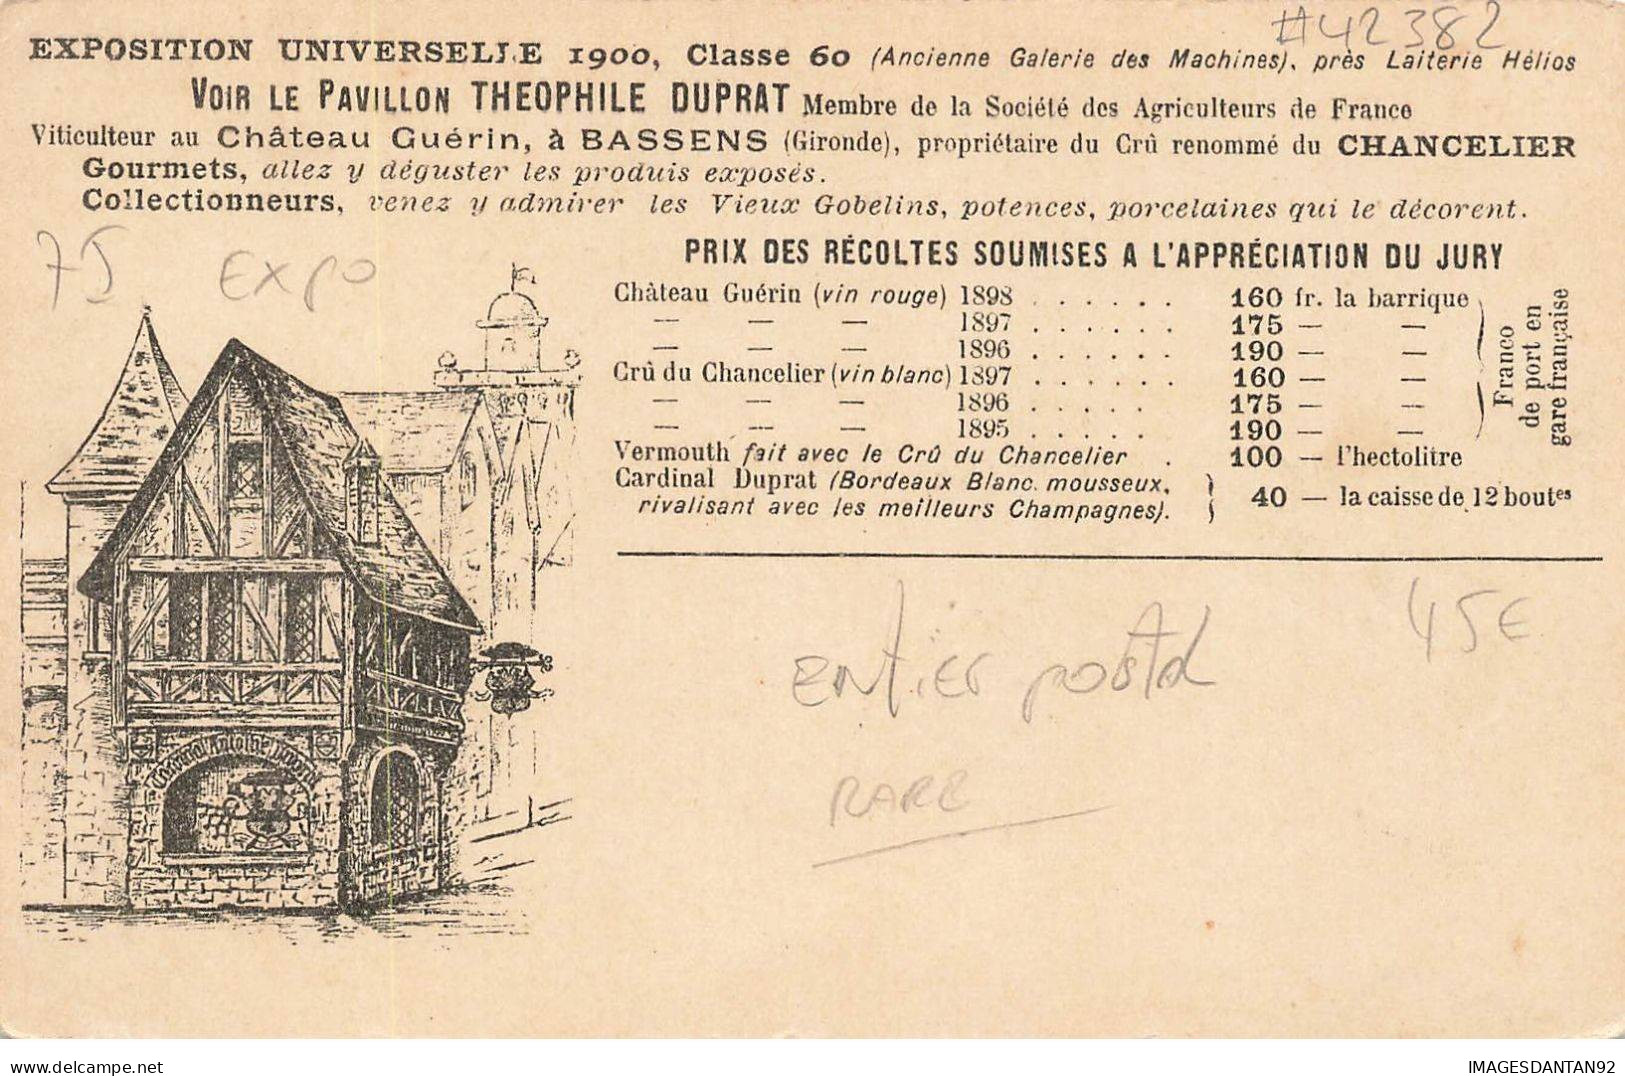 75 PARIS #FG42382 EXPOSITION UNIVERSELLE 1900 ENTIER POSTAL CARDINAL ANTHOISNE DUPRAT VITICULTEUR BASSENS - Expositions